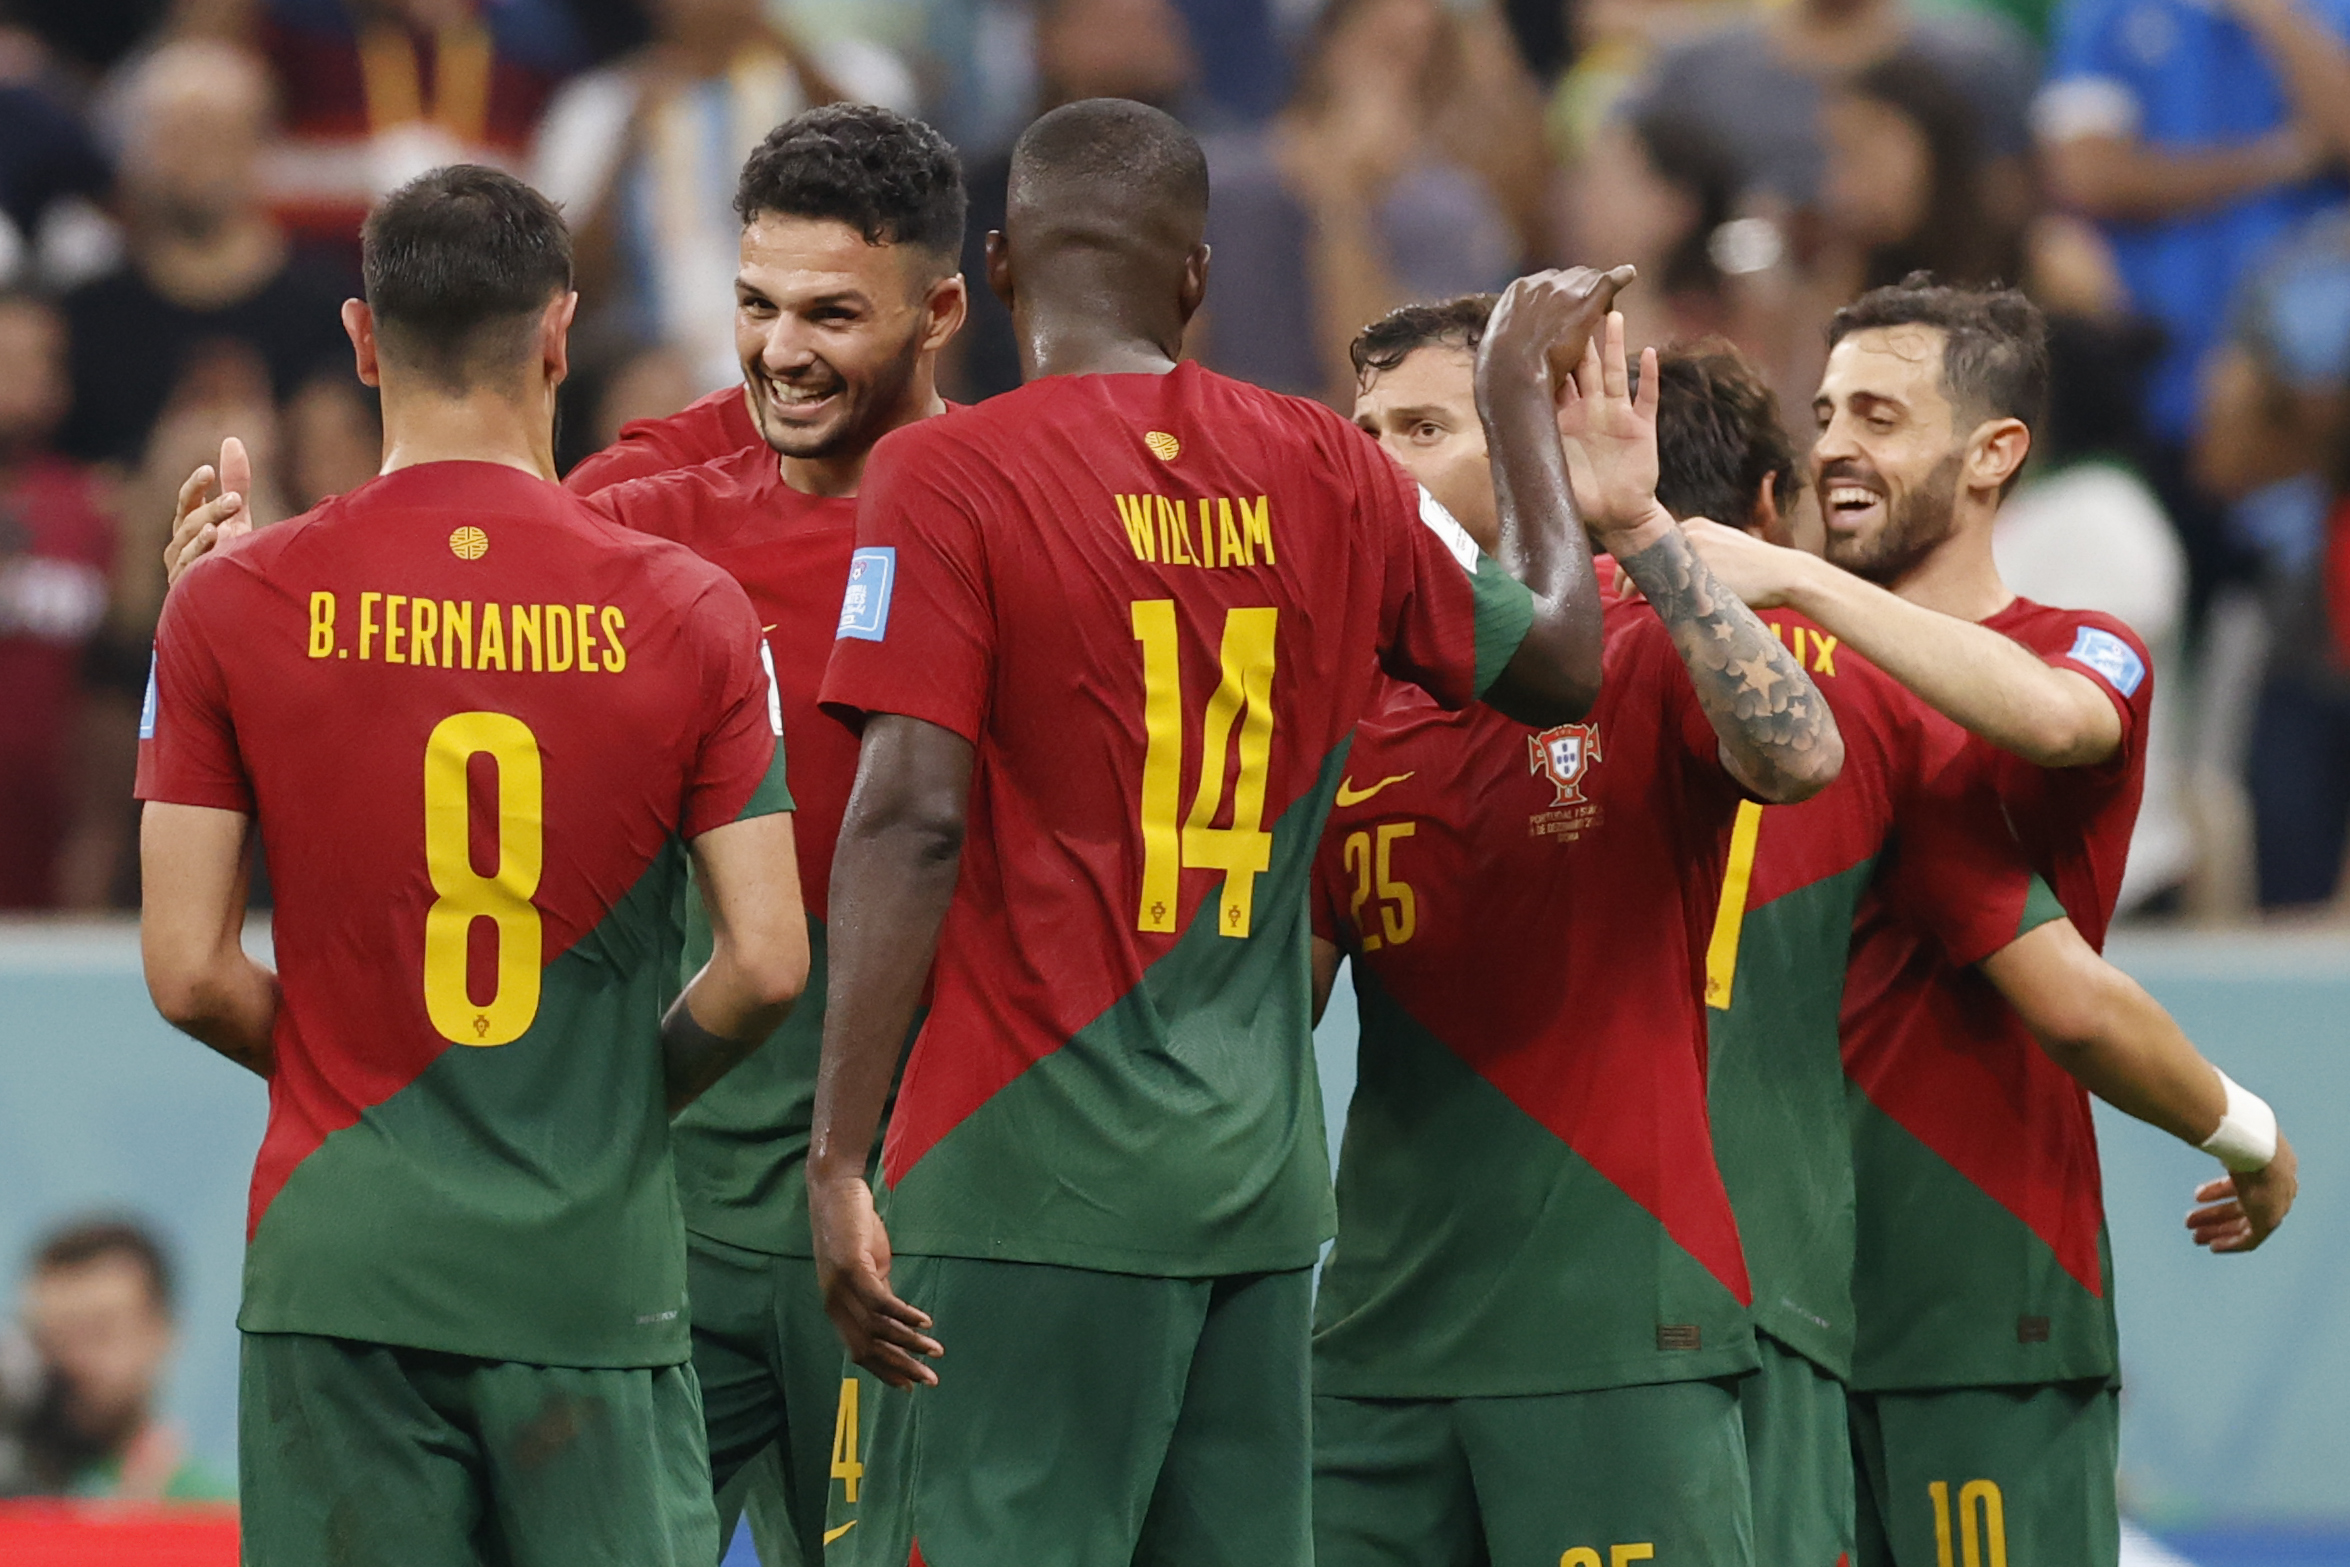 El vestuario de Portugal a Gonçalo Ramos antes que a Cristiano | Mundial Qatar 2022 | EL PAÍS